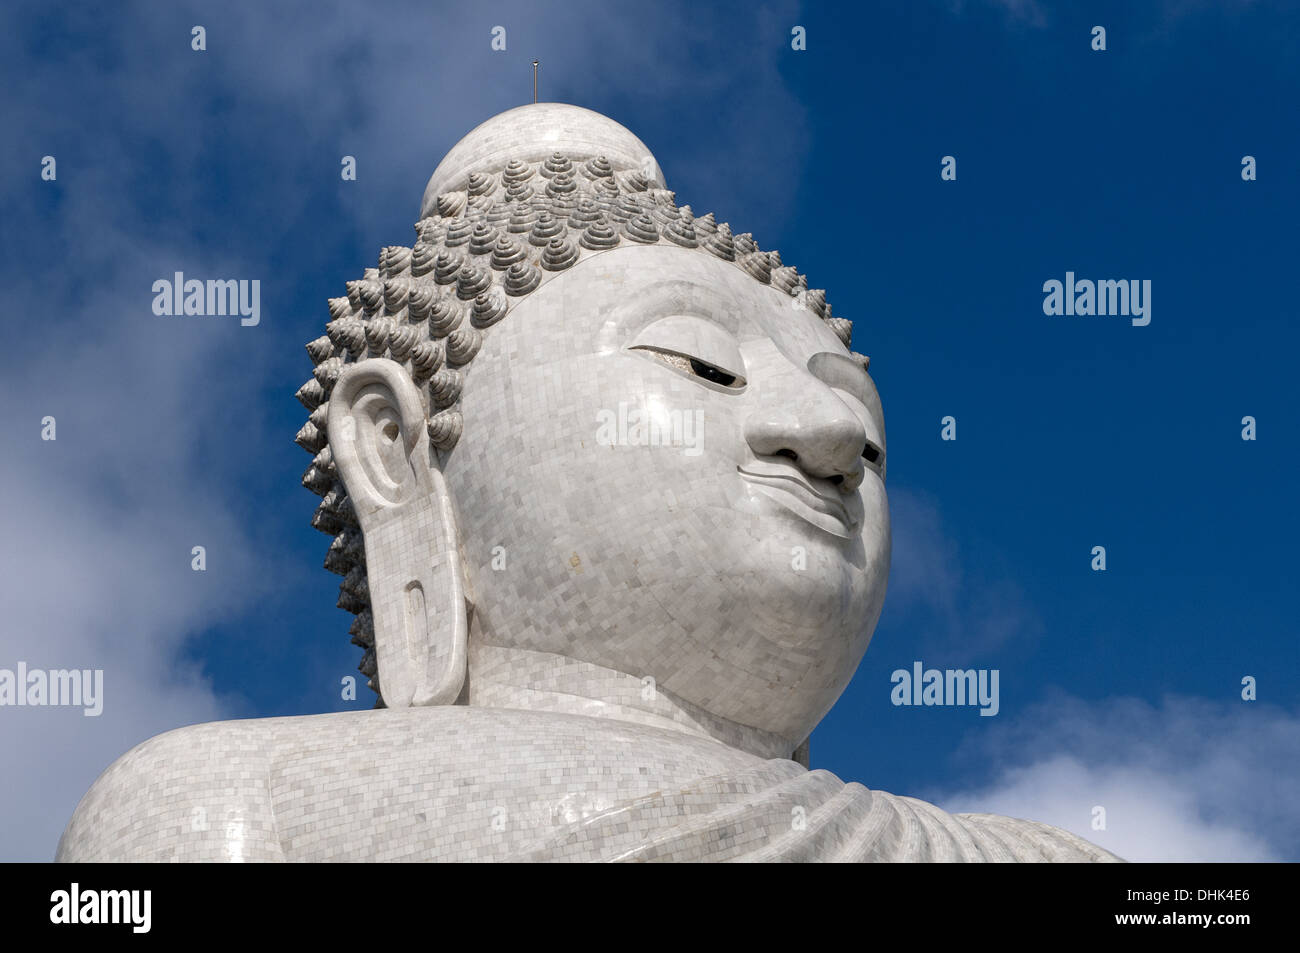 Portrait of the Big Buddha, Phuket, Thailand Stock Photo